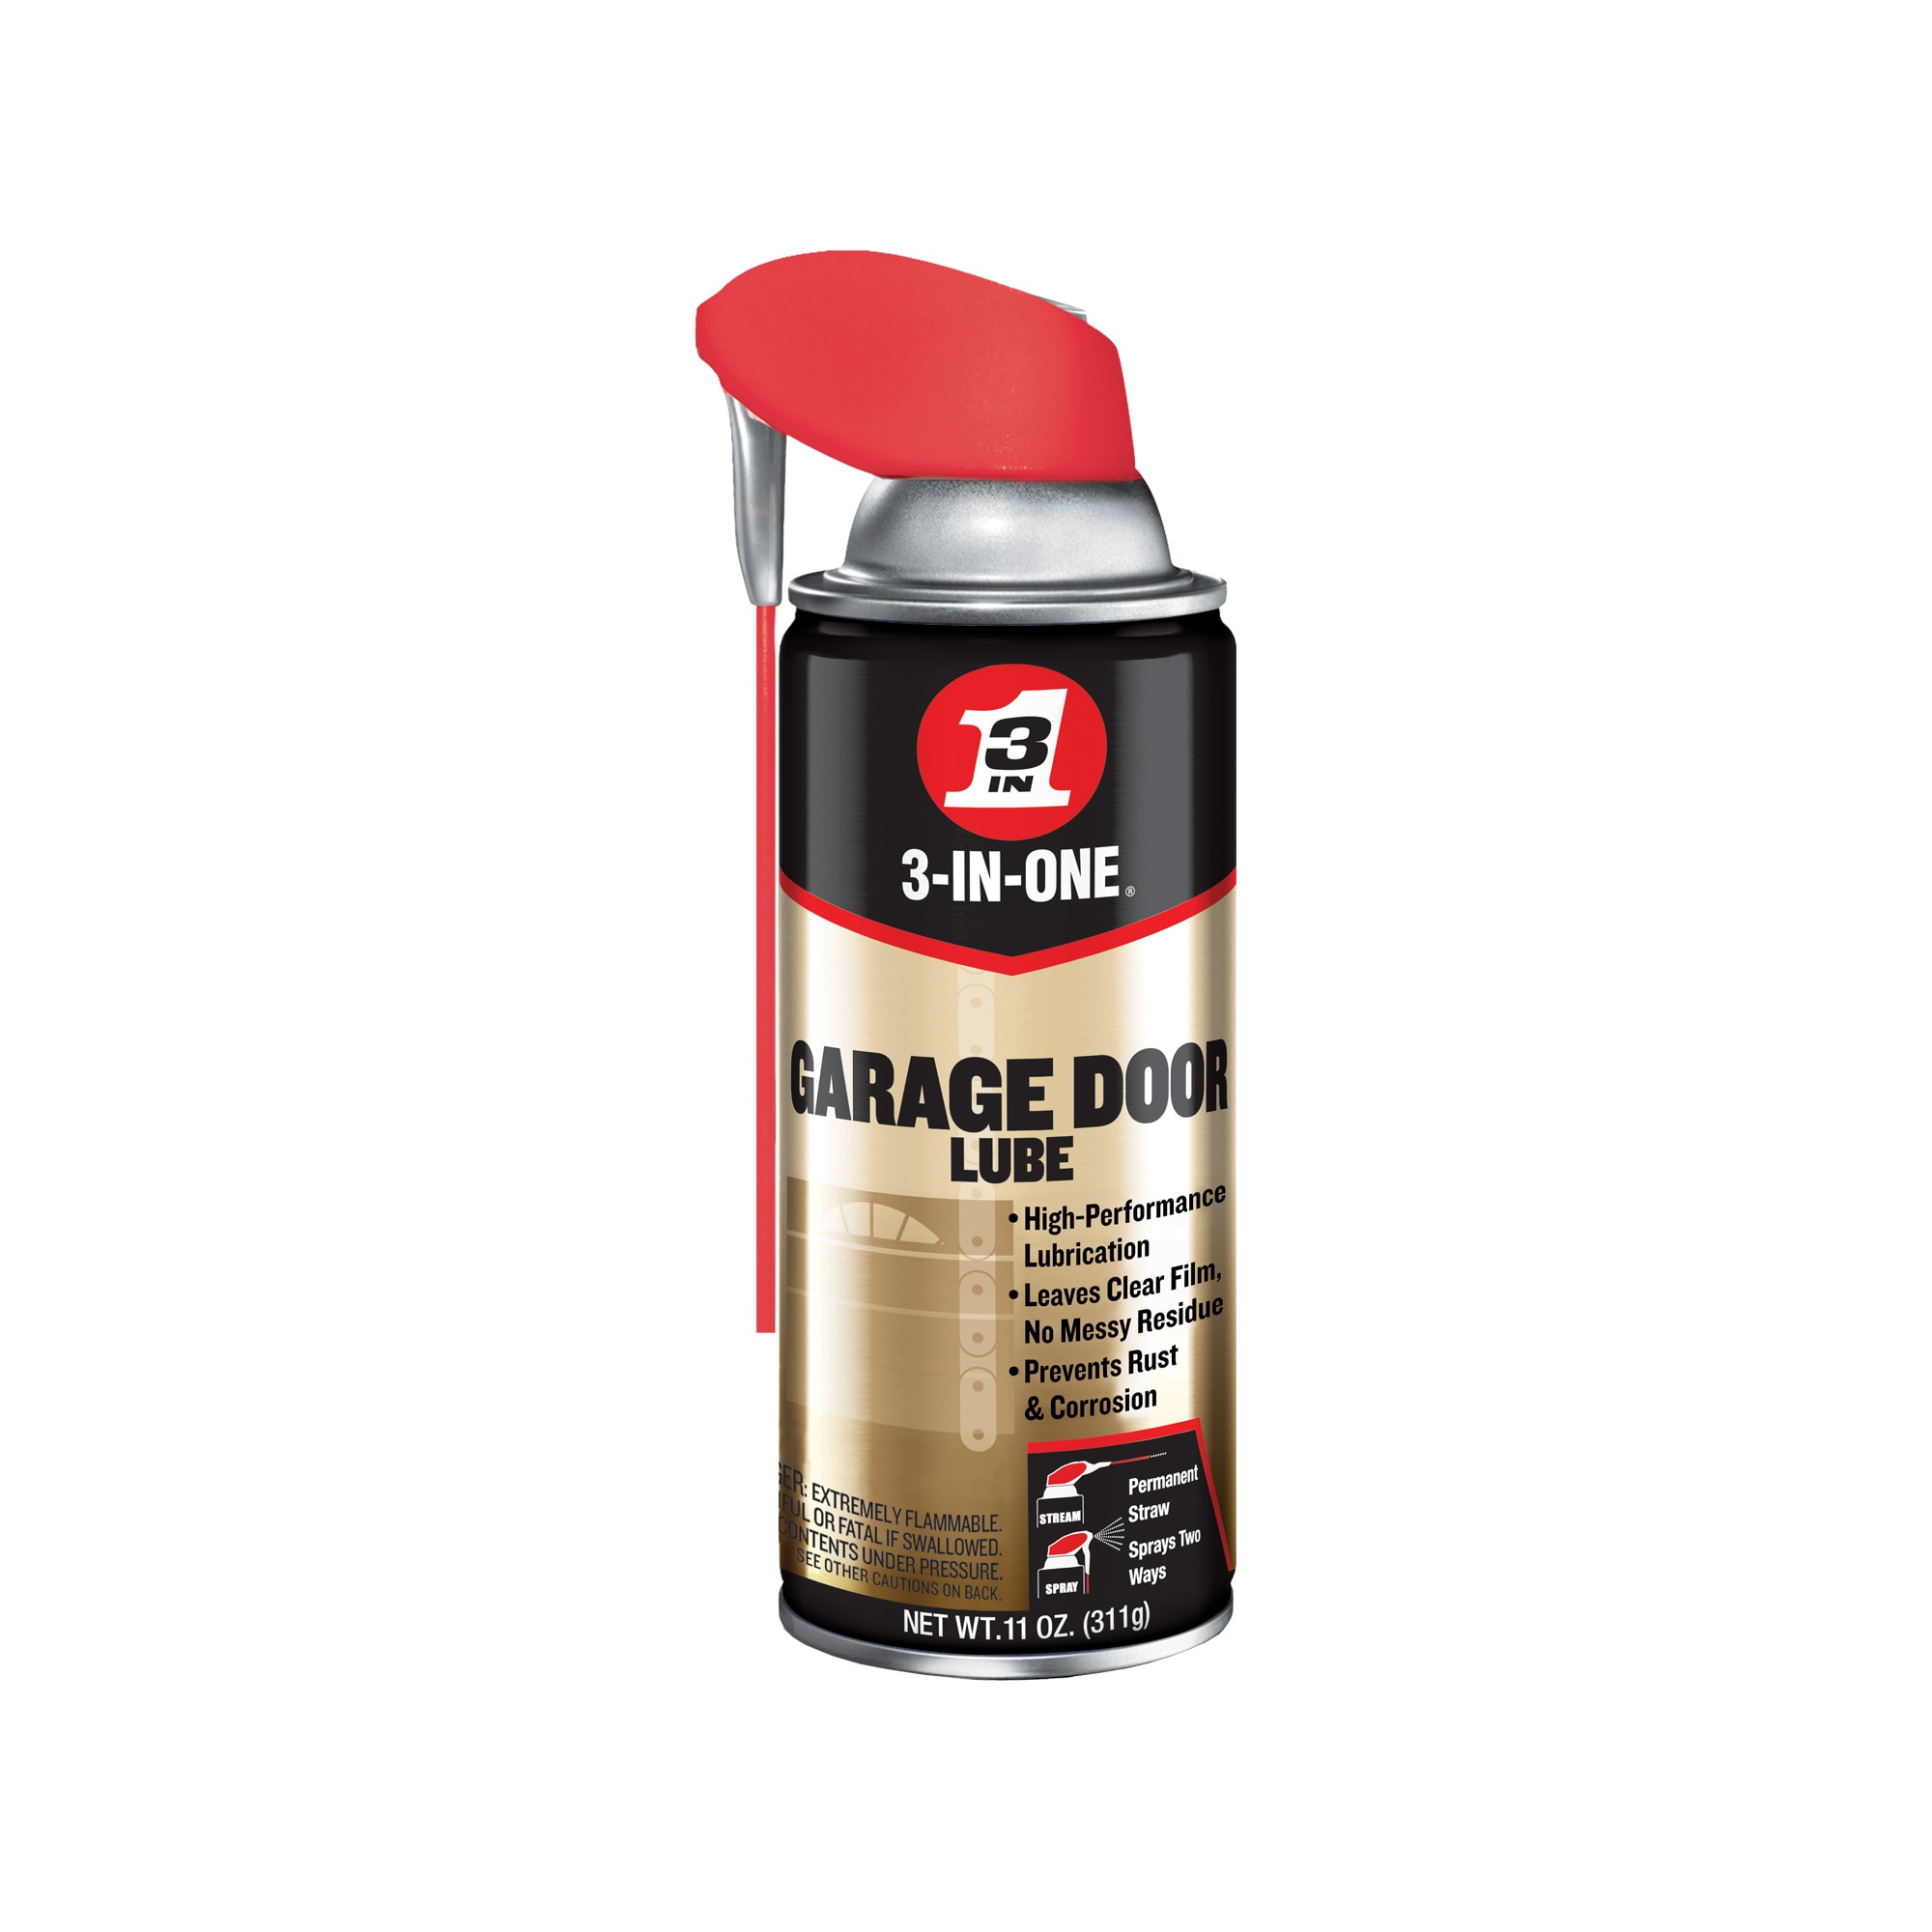 WD-40 Specialist Silicone Spray, 100 ml - 3DJake International